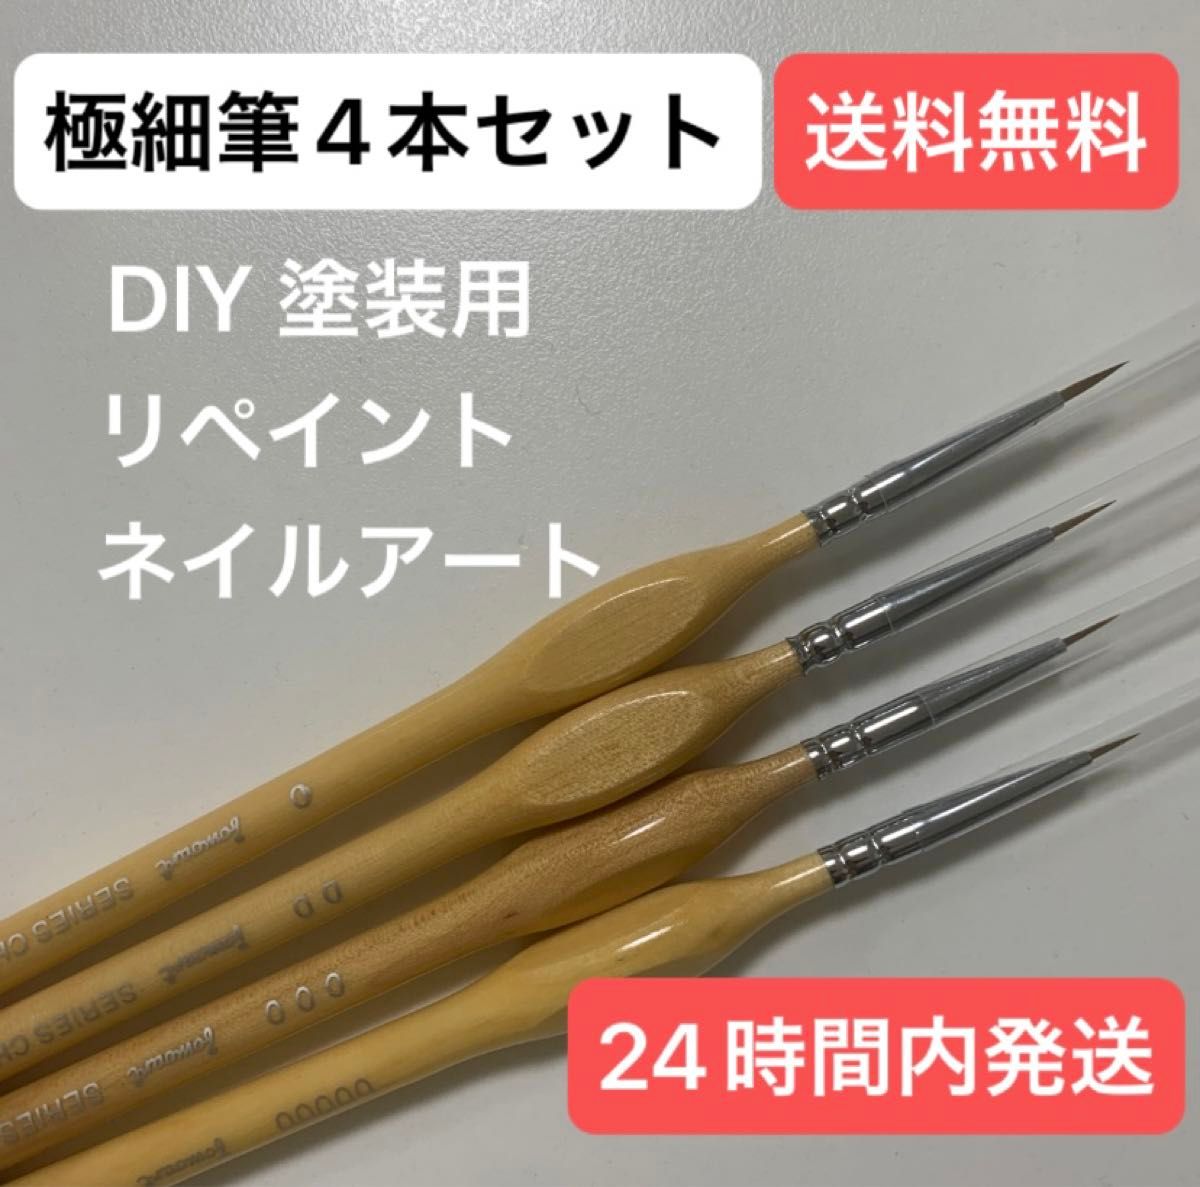 【4本セット】極細筆 ガンプラ プラモデル フィギュア ネイルアート 陶芸 工具